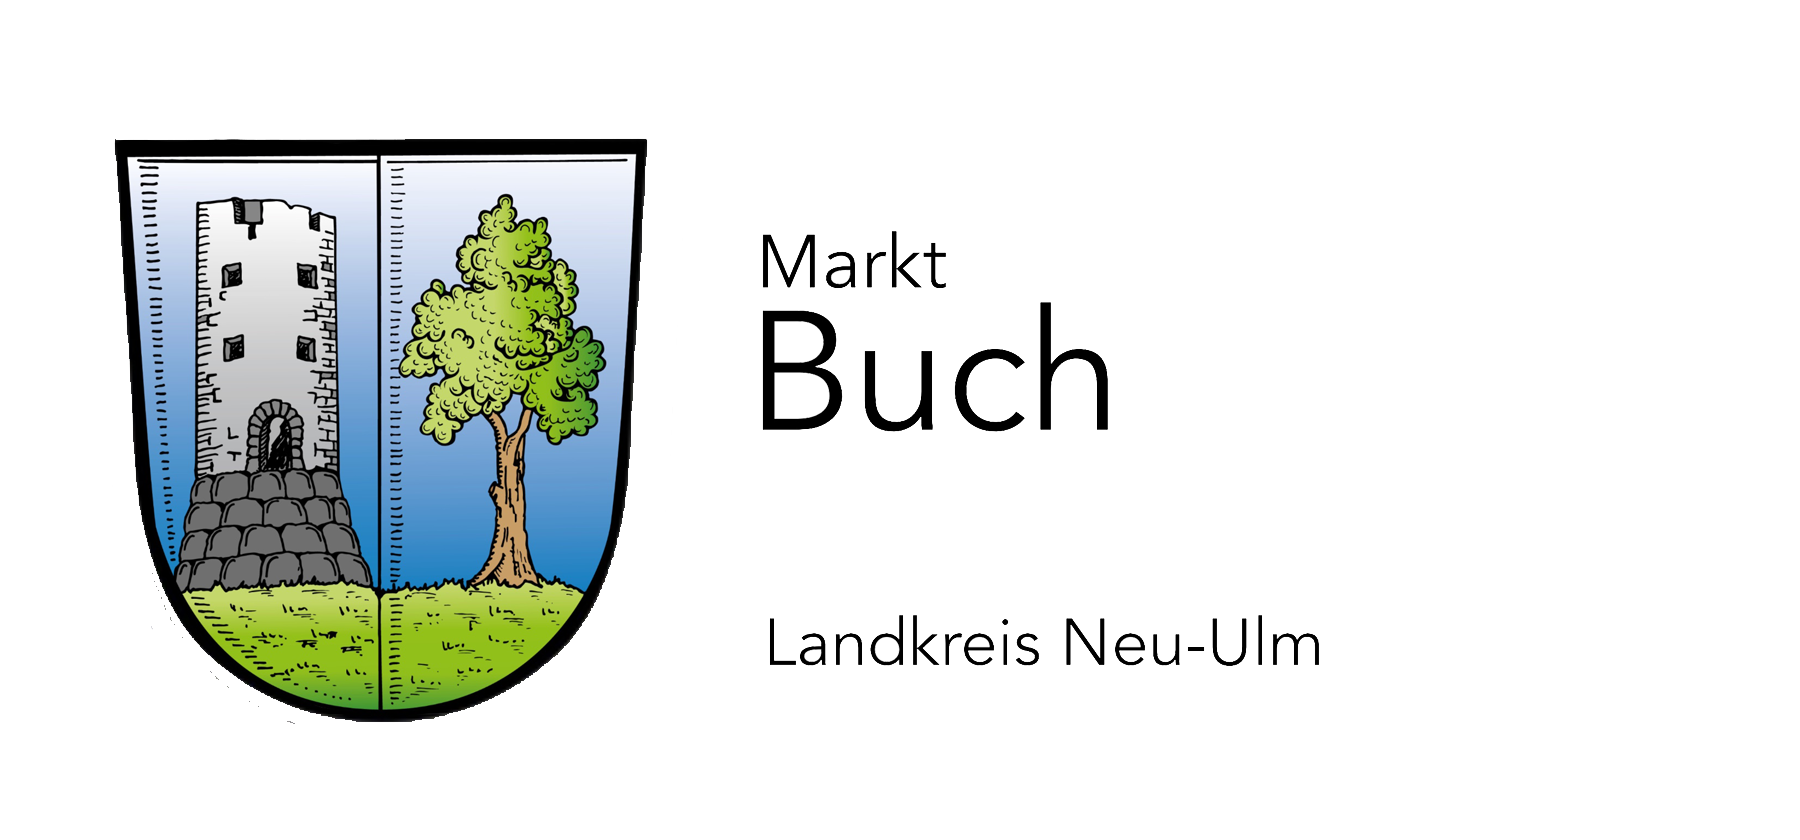 Wappen des Marktes Buch mit Landkreis Neu-Ulm